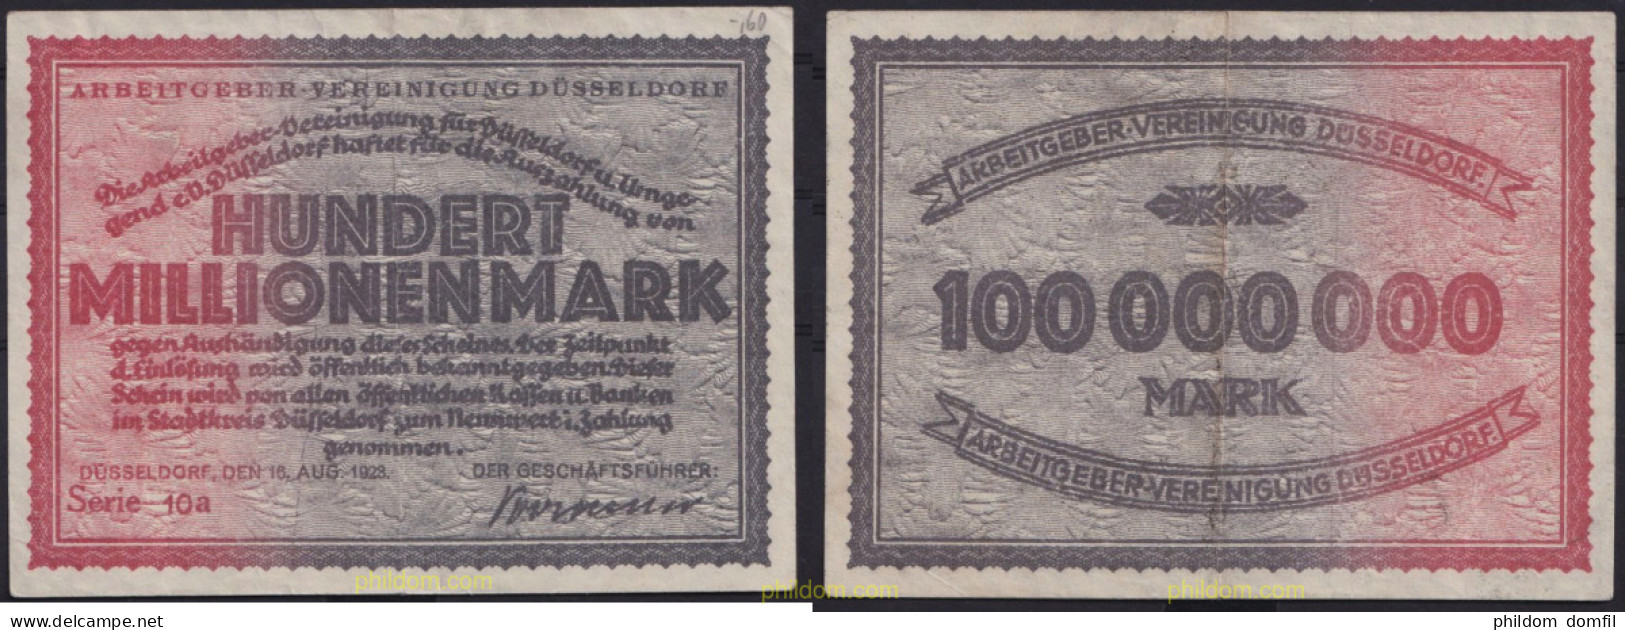 3691 ALEMANIA 1923 GERMANY HUNDERT MILLIONEN MARK DUSSELDORF 1923 - Administración De La Deuda